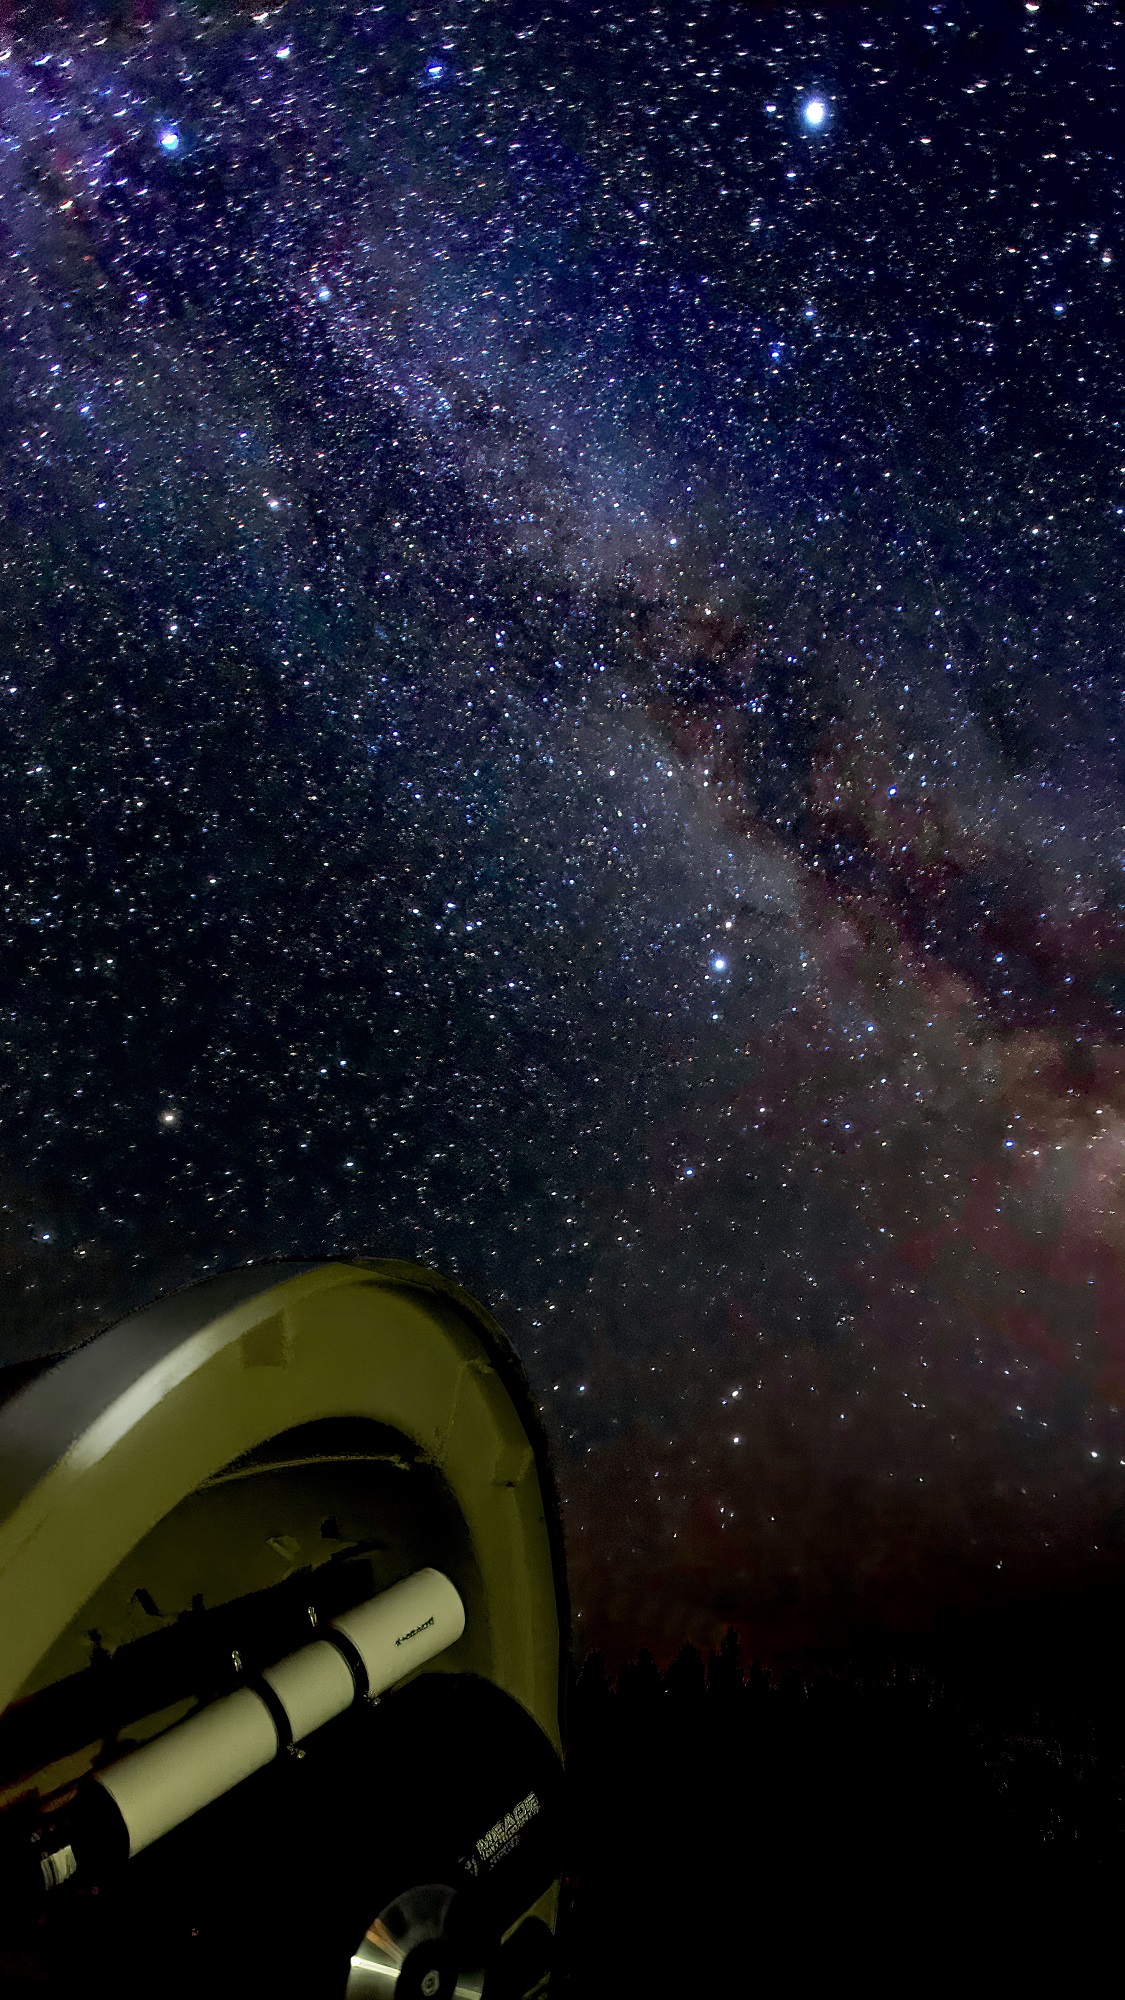 télescope au premier plan sur un fond de ciel étoilé avec la Voie lactée